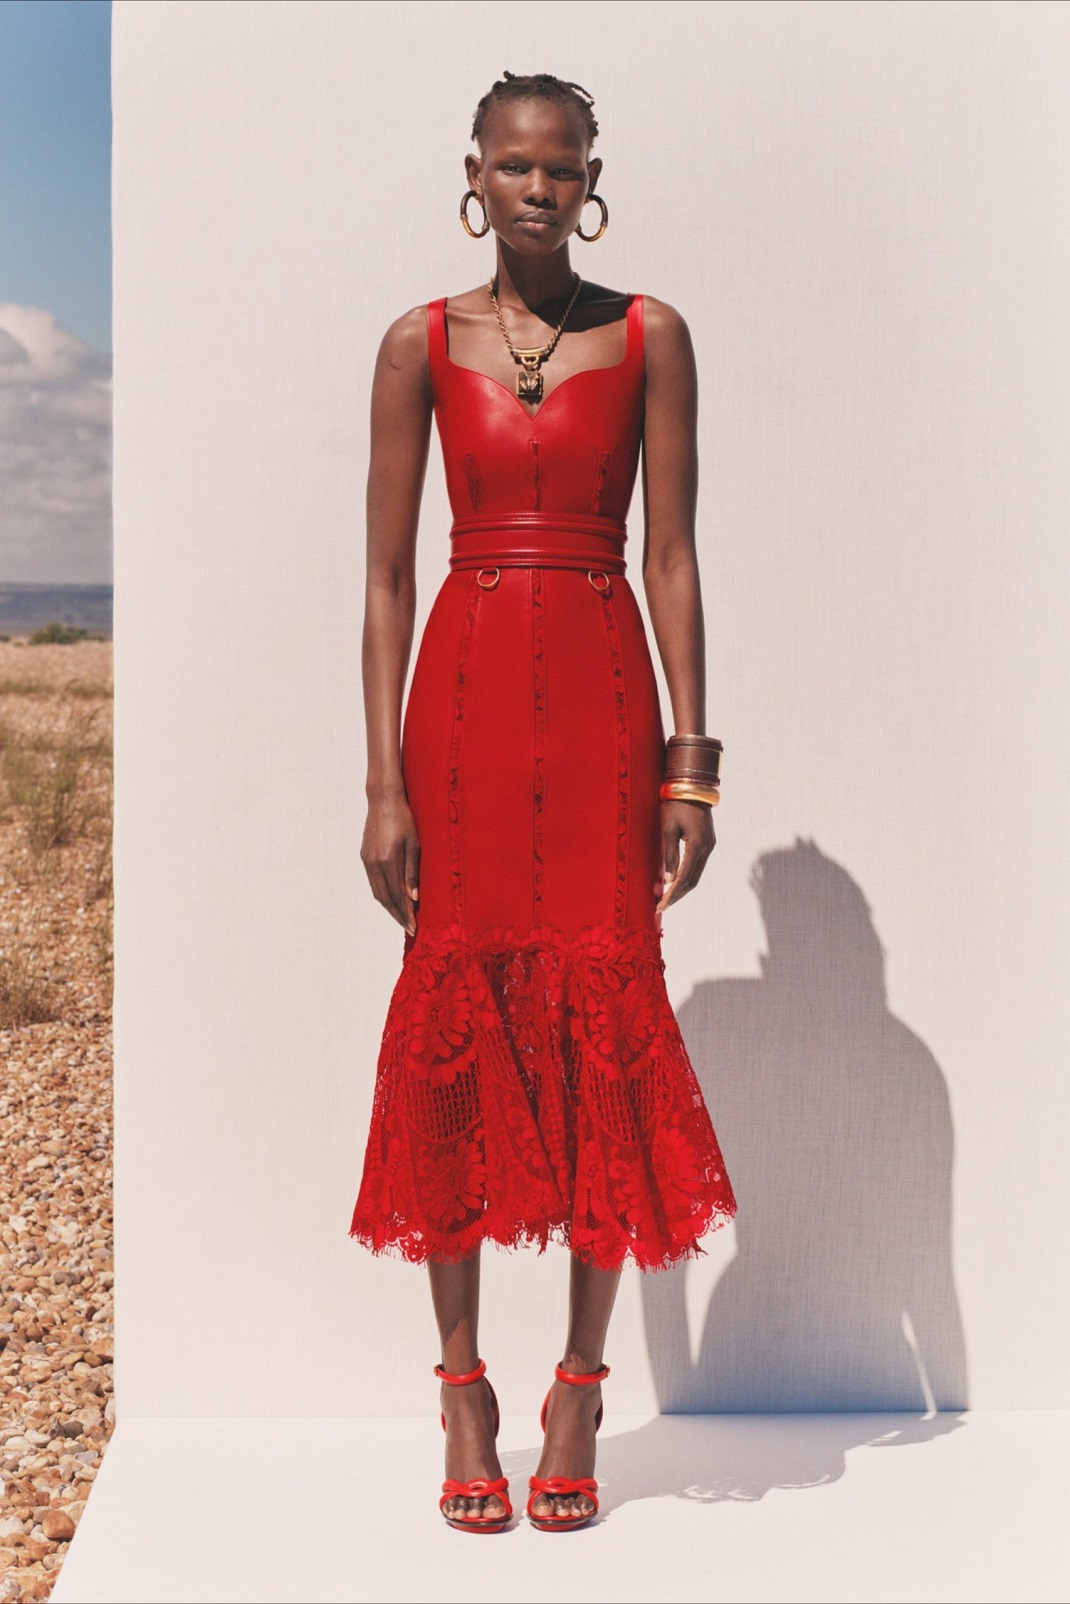 μόντέλο στην καμπάνια του Alexander McQueen με κόκκινο φόρεμα